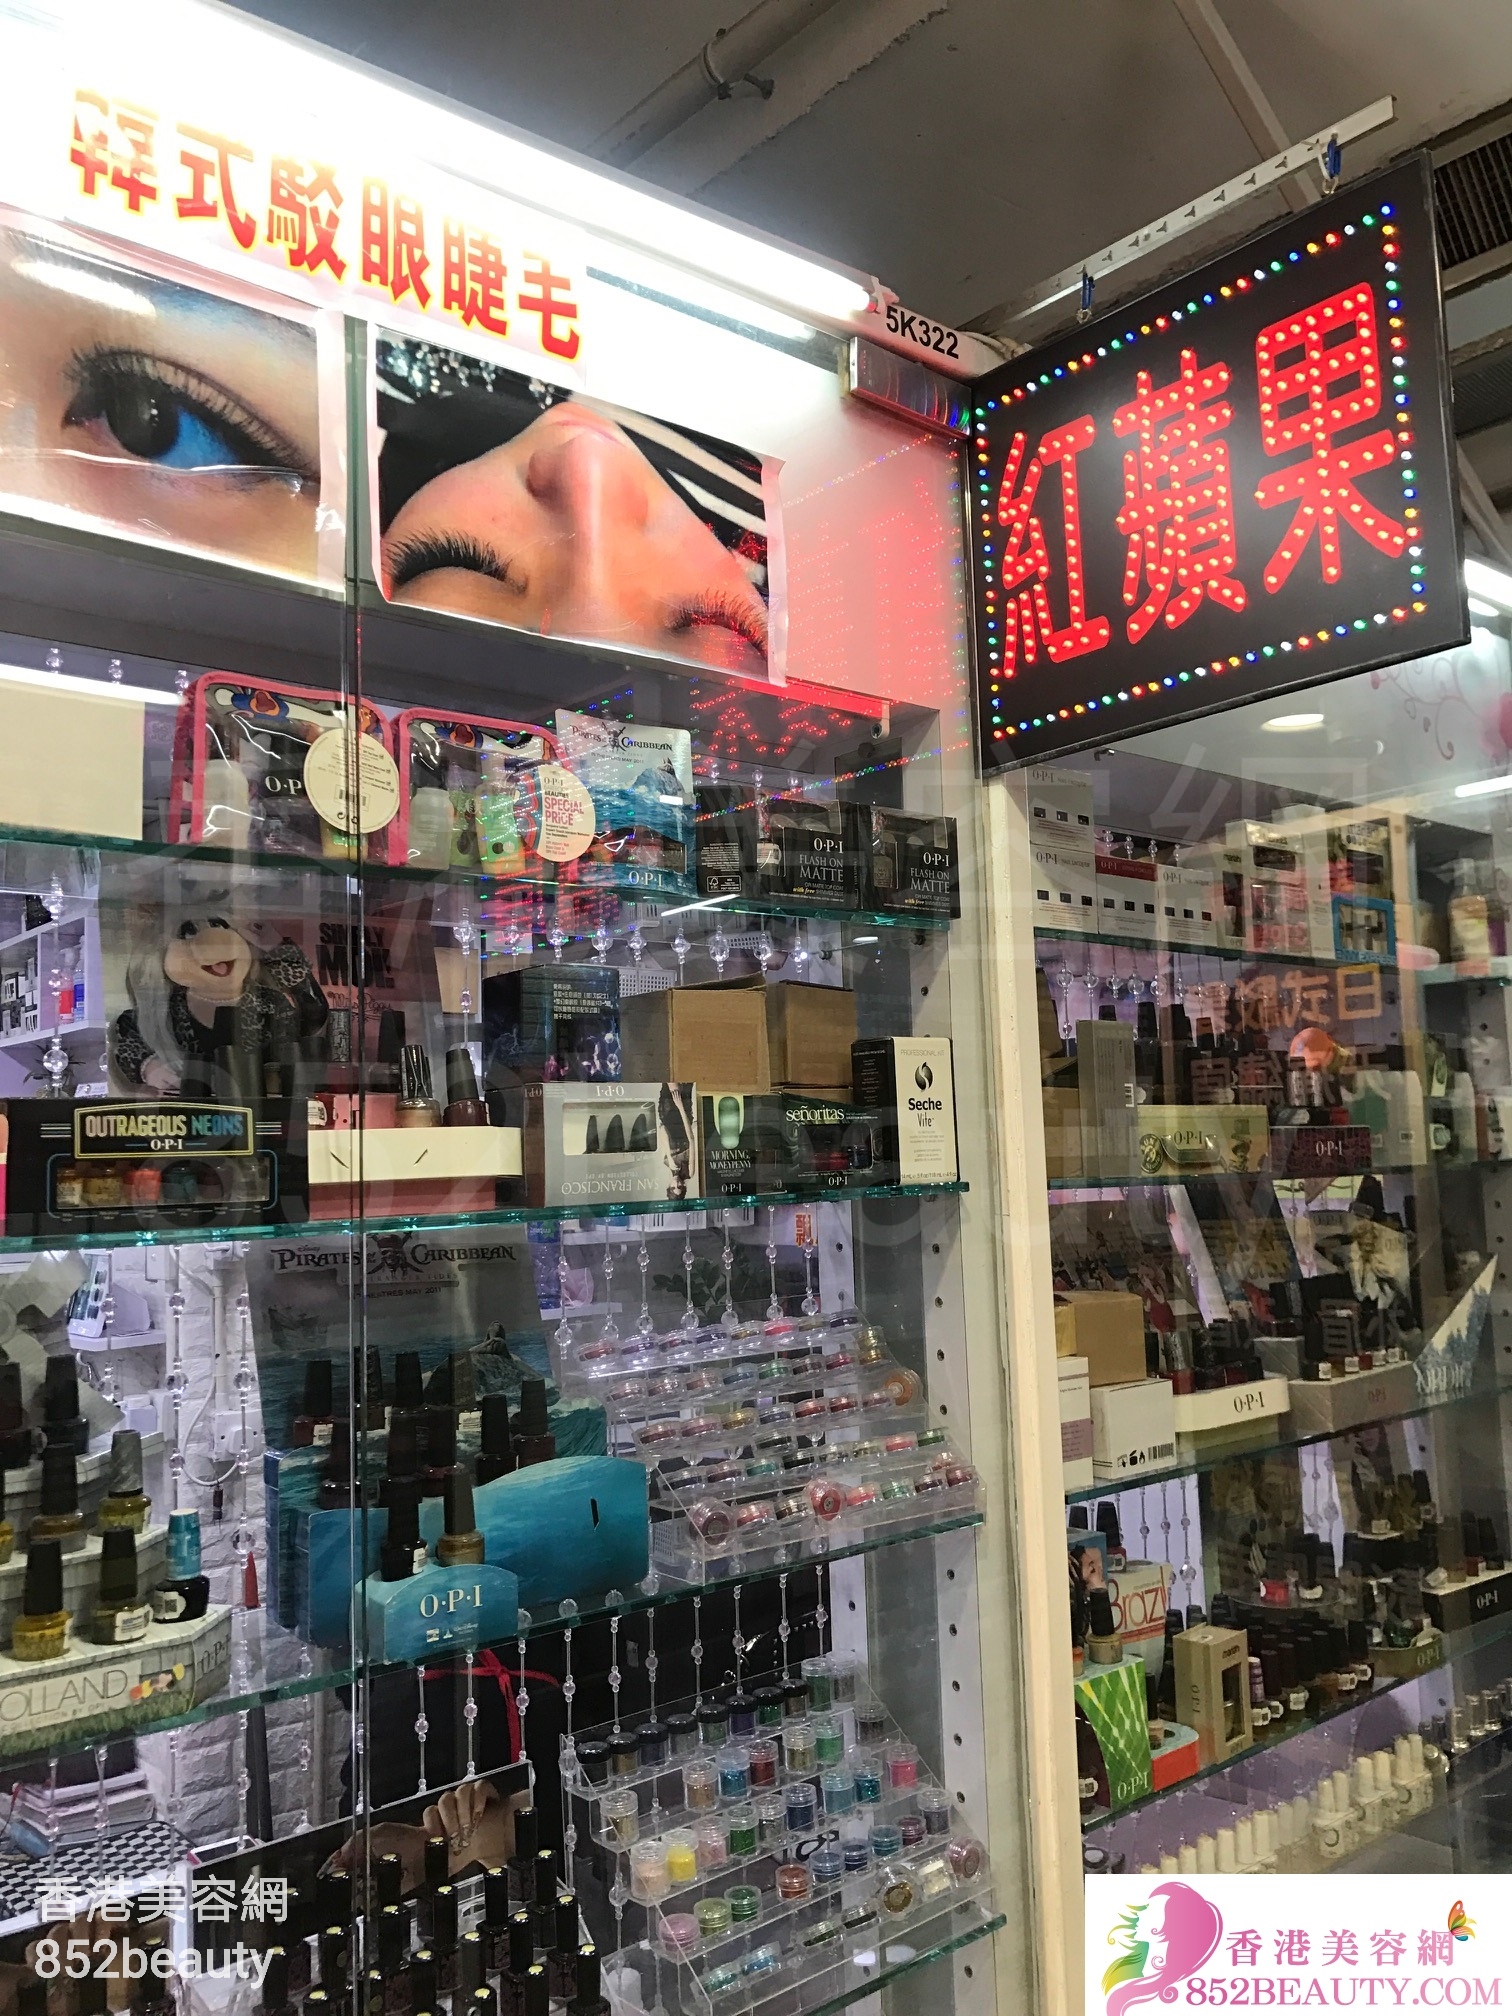 香港美容網 Hong Kong Beauty Salon 美容院 / 美容師: 紅蘋果